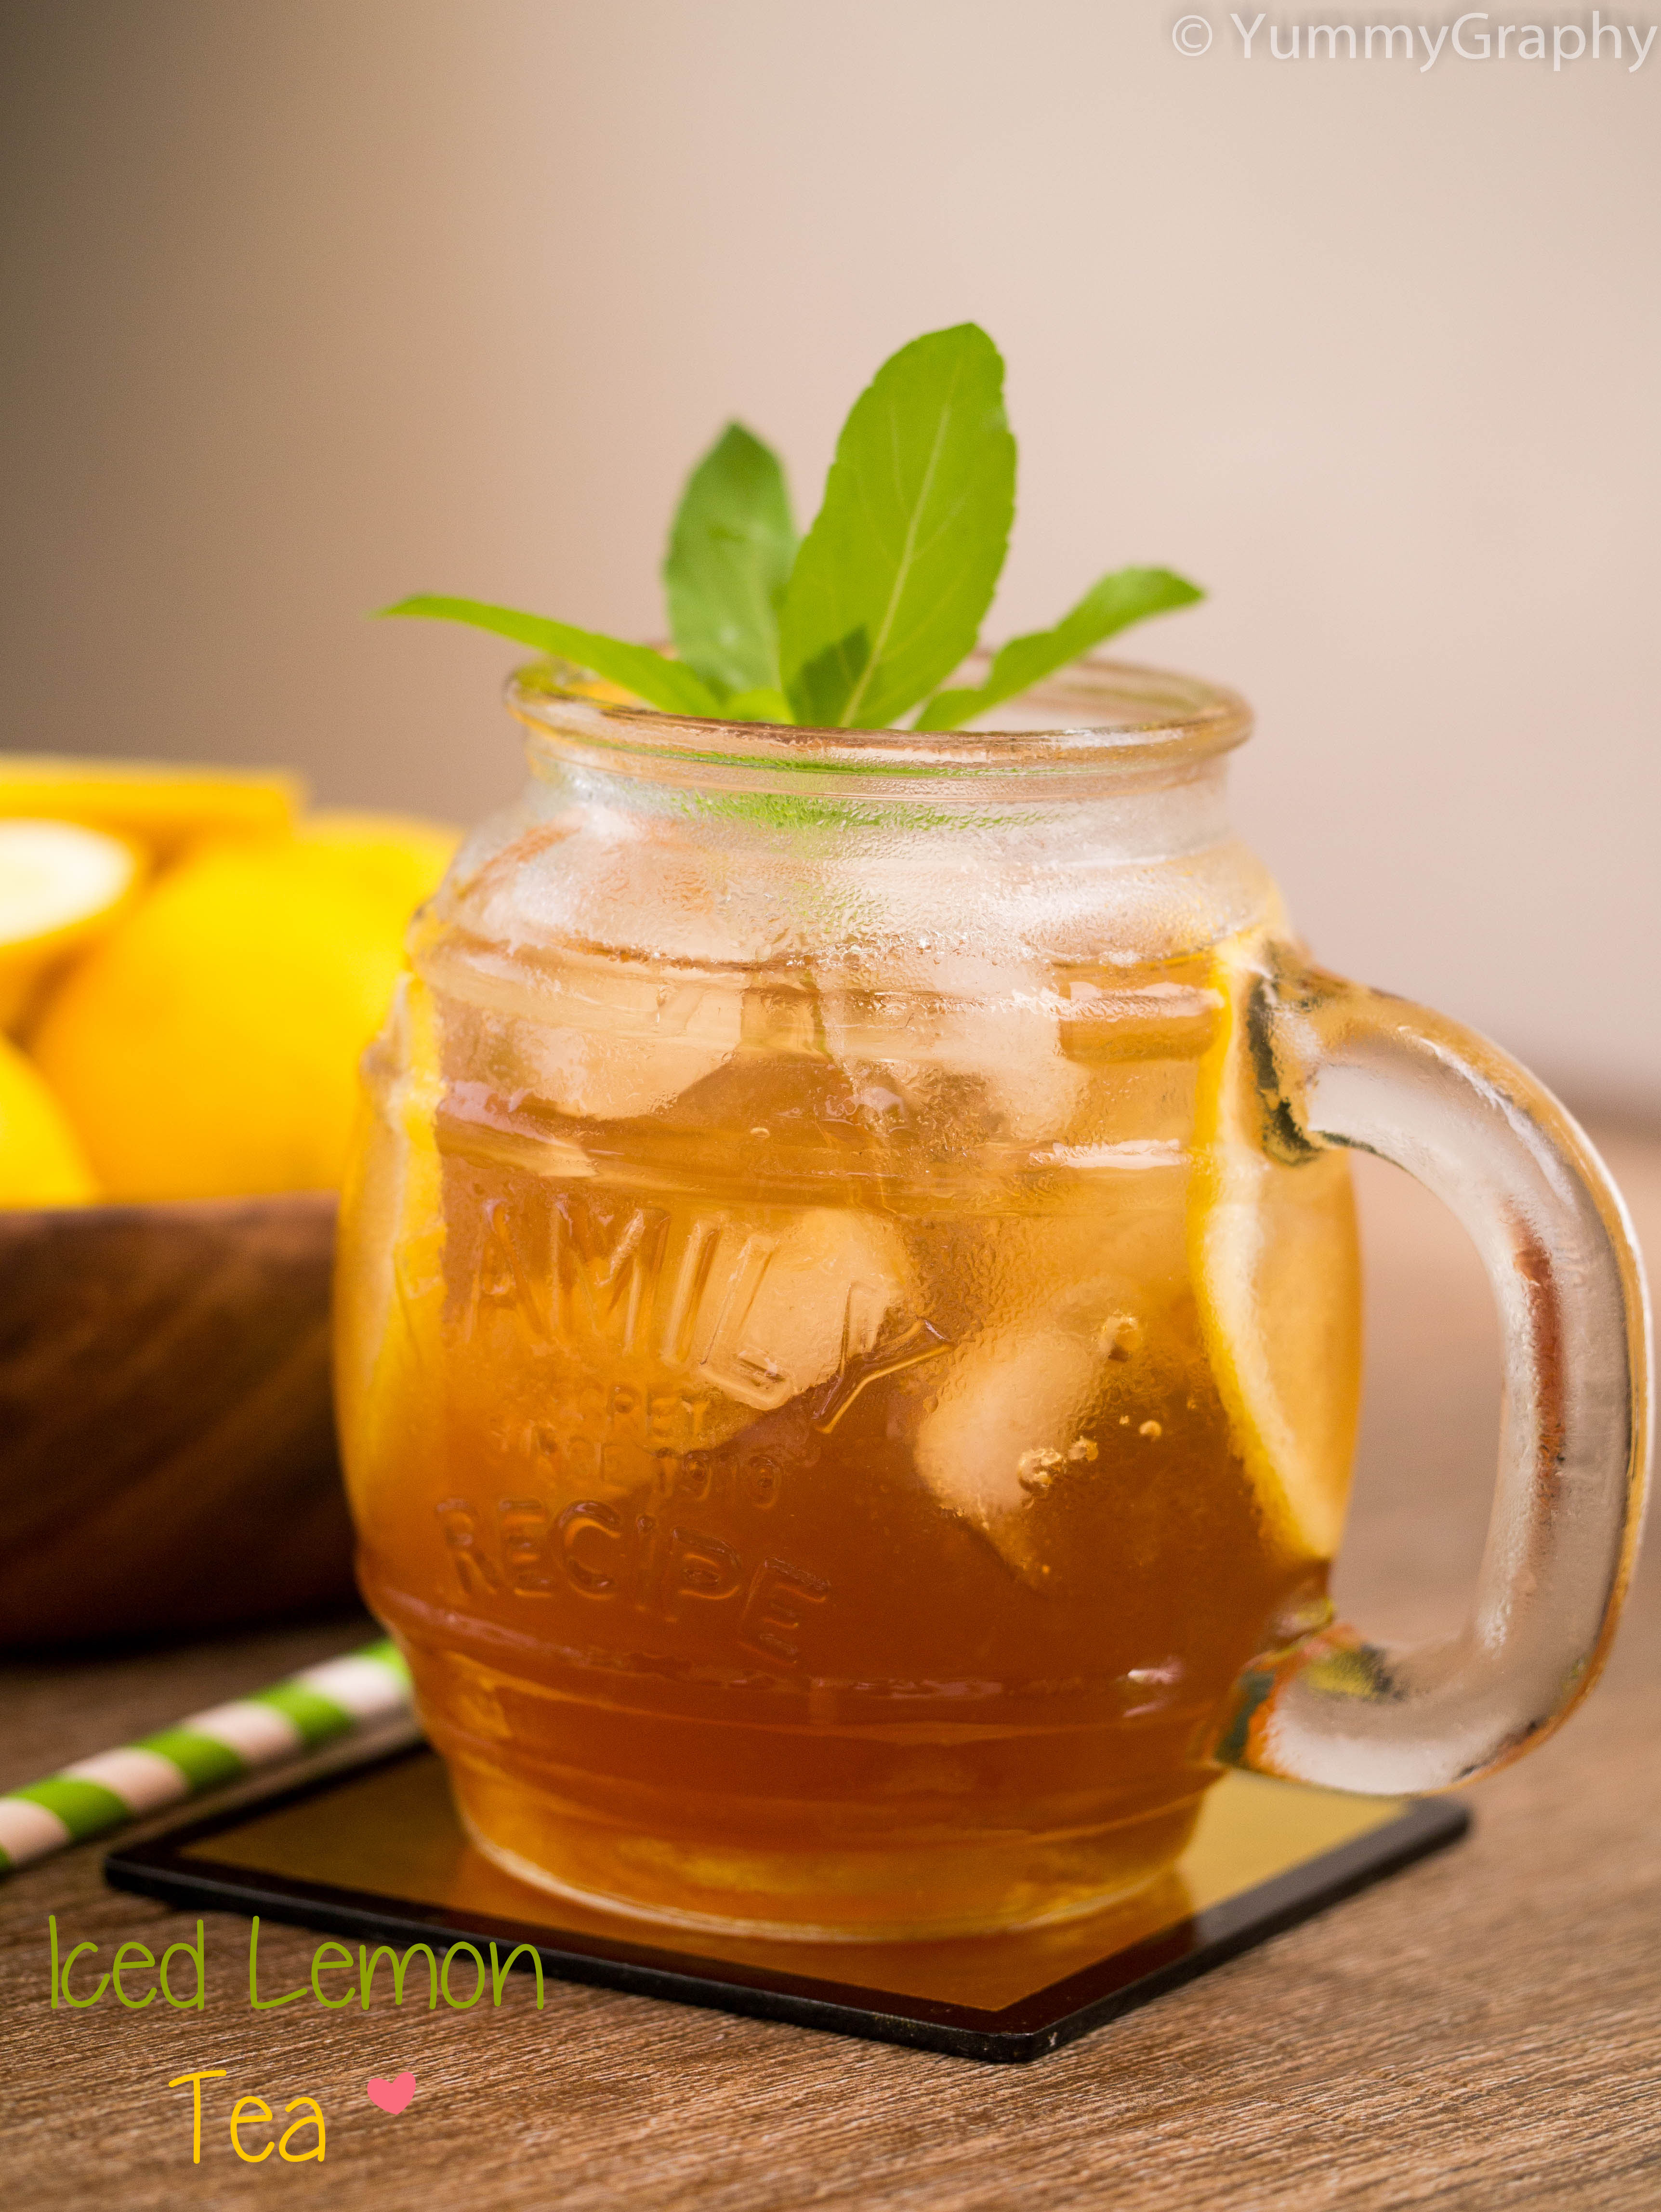 Iced Lemon Tea - YummyGraphy